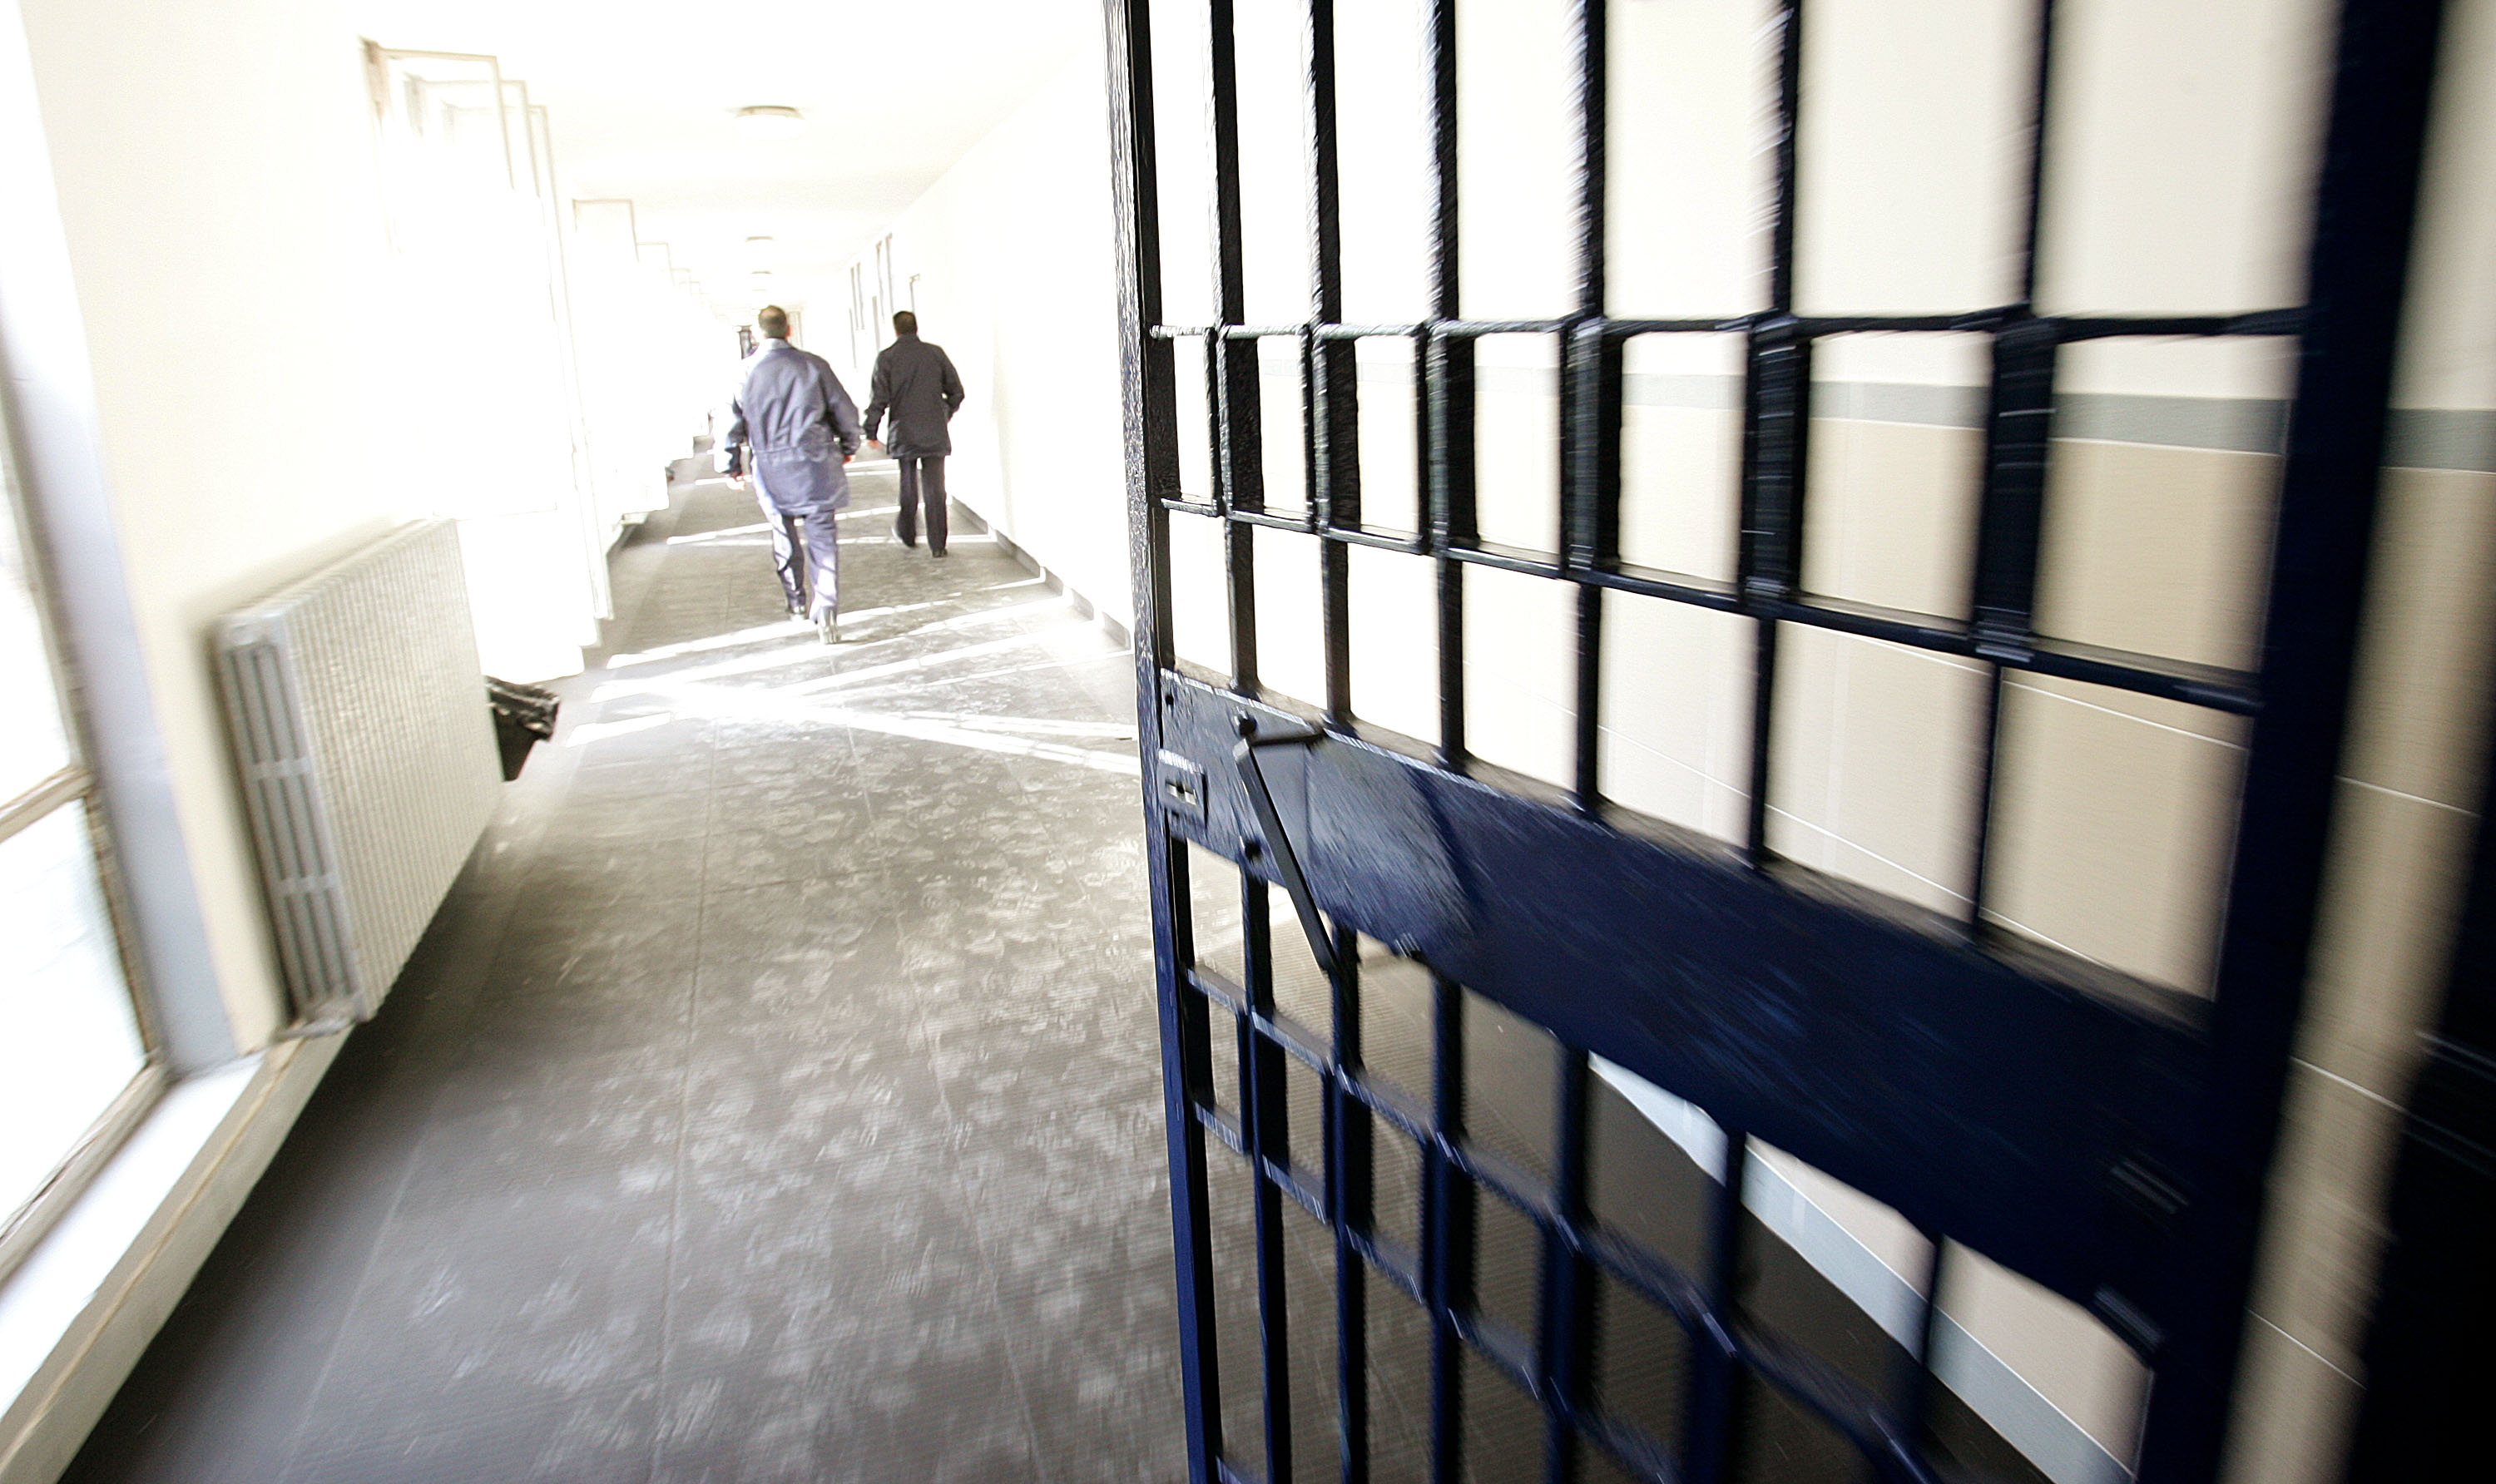  Omicidio tra le sbarre nel carcere di San Gimignano, SAPPE: “situazione ingovernabile”